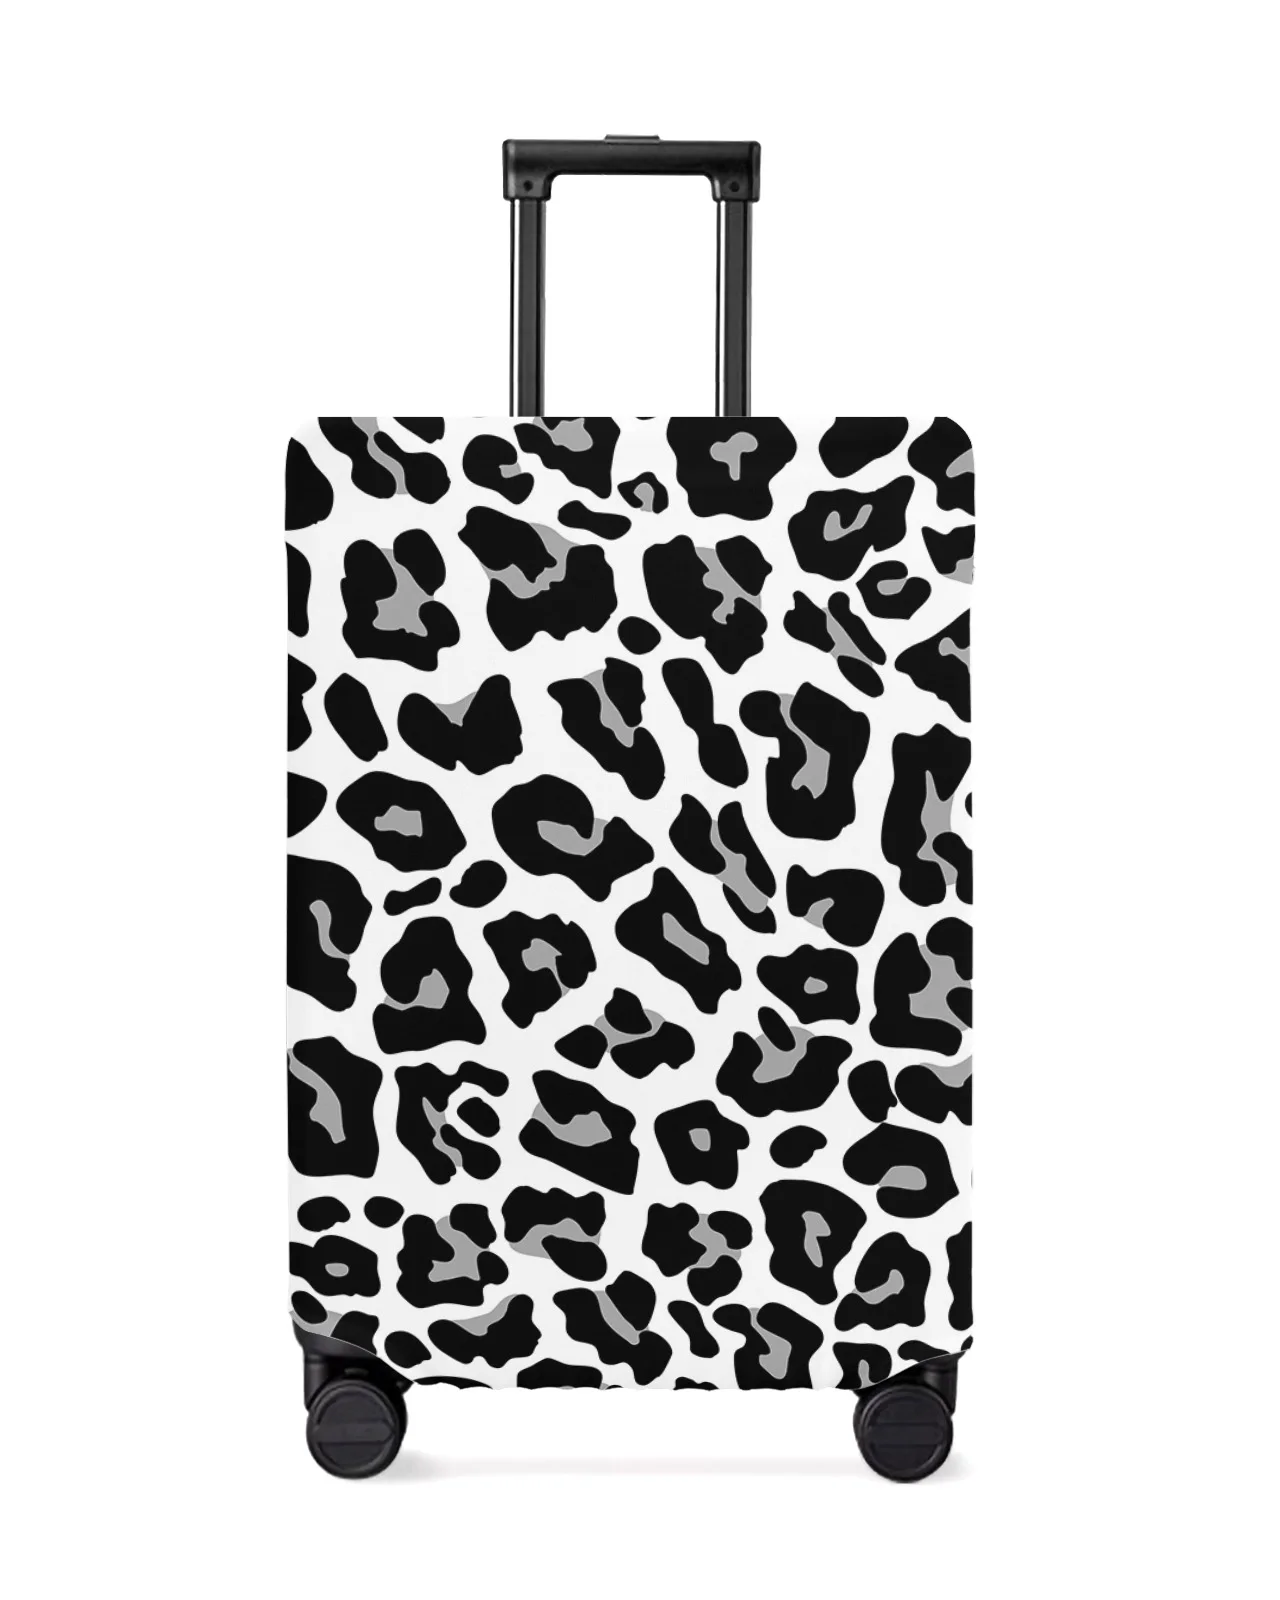 funda-de-equipaje-de-viaje-con-textura-de-piel-de-leopardo-cubierta-de-equipaje-elastica-funda-de-maleta-cubierta-antipolvo-accesorios-de-viaje